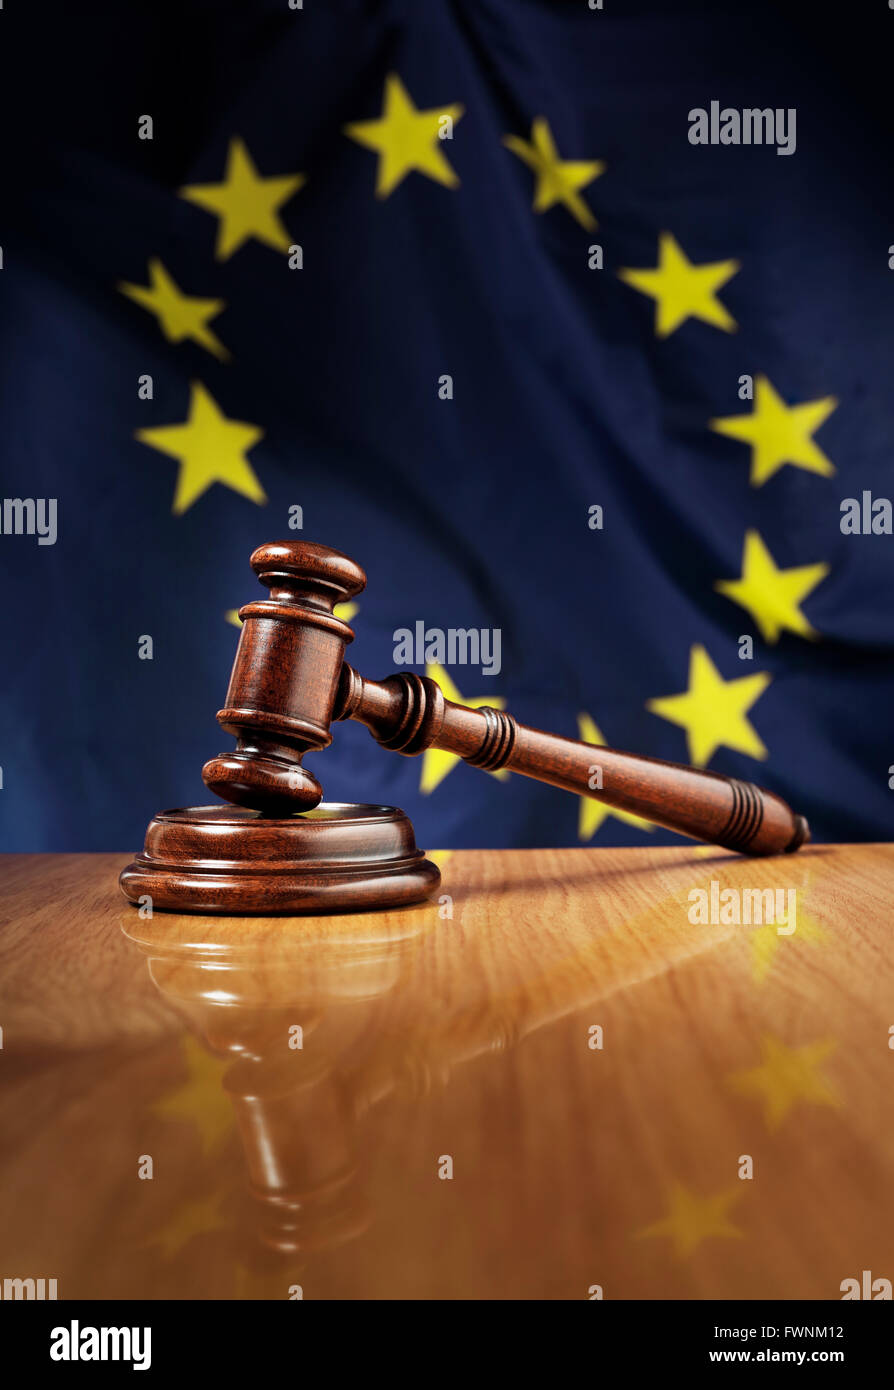 Mahagoni Holz Hammer auf glänzende Holztisch. Flagge der Europäischen Union, EU, im Hintergrund. Stockfoto